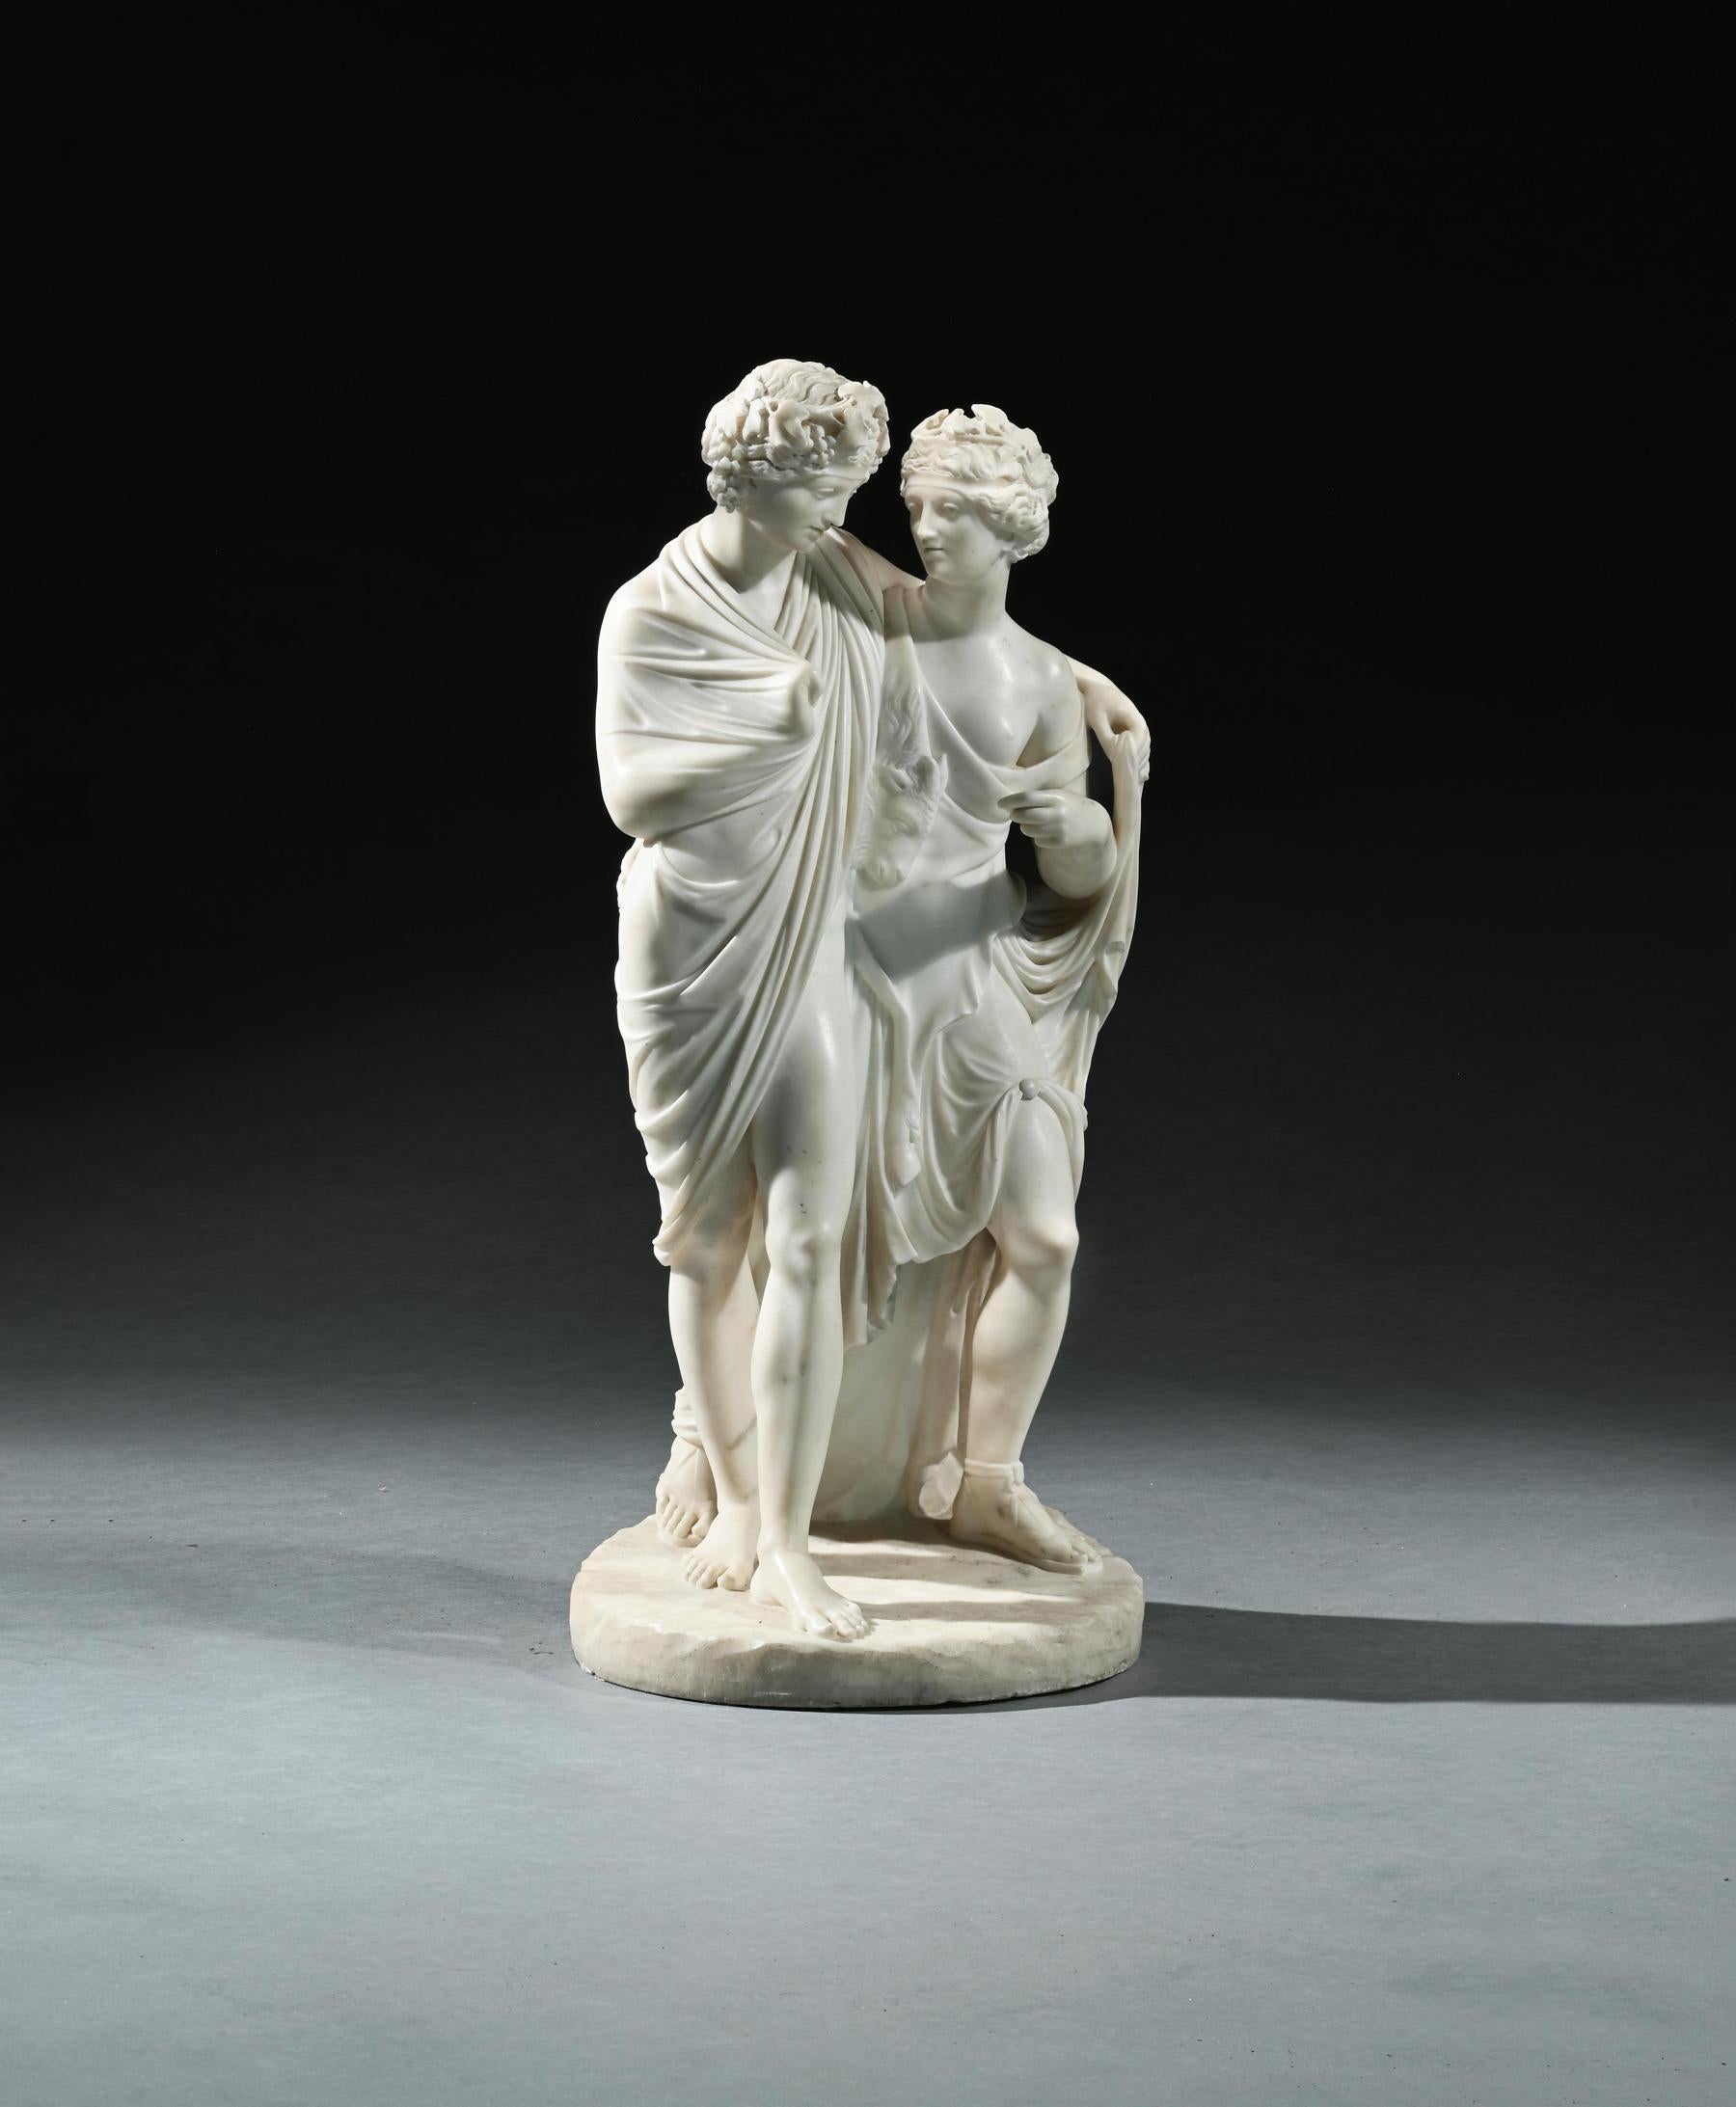 Äußerst feine Marmorgruppe von Bacchus und Ariadne nach der Carlo Albacini (1734 - 1813) zugeschriebenen Antike

Italien Rom um 1800

Provenienz 
Eine französische Private Collection'S
In weißem Marmor gemeißelt, zeigt es ein junges Paar, das